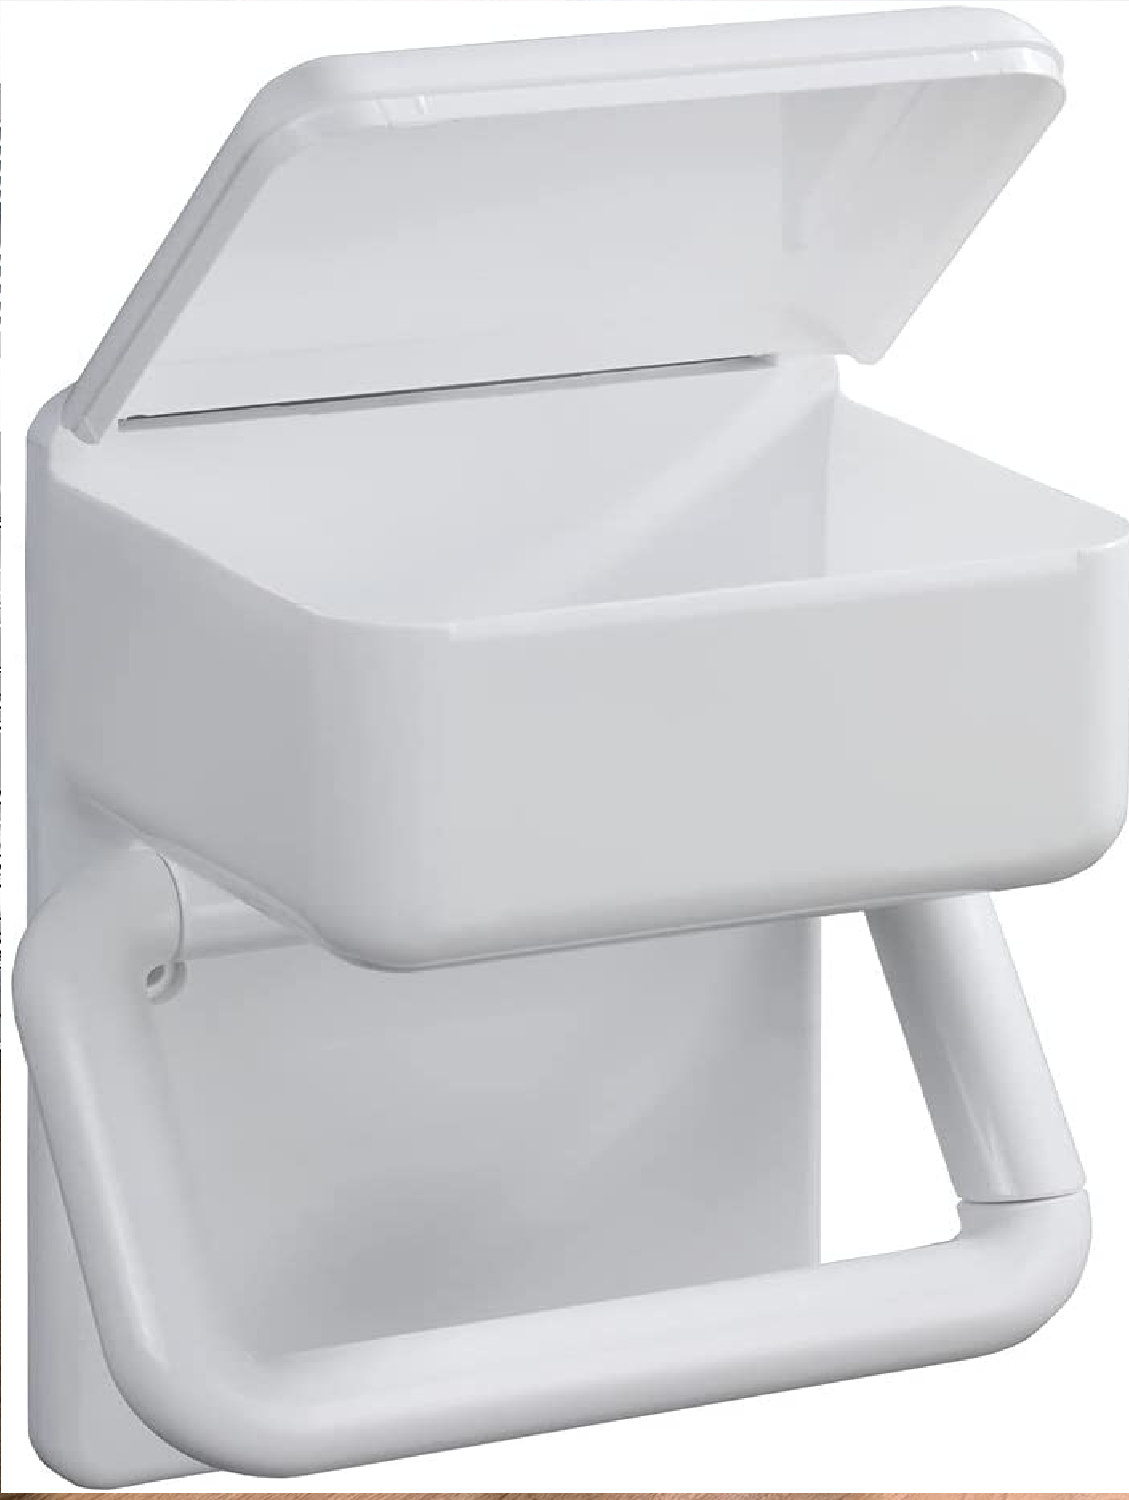 Toilettenpapierhalter 2 in 1 feuchttücher ablage Ersatzrollenhalter Papierrolle Toilettenpapier Klopapier WC-Bürstenhalter